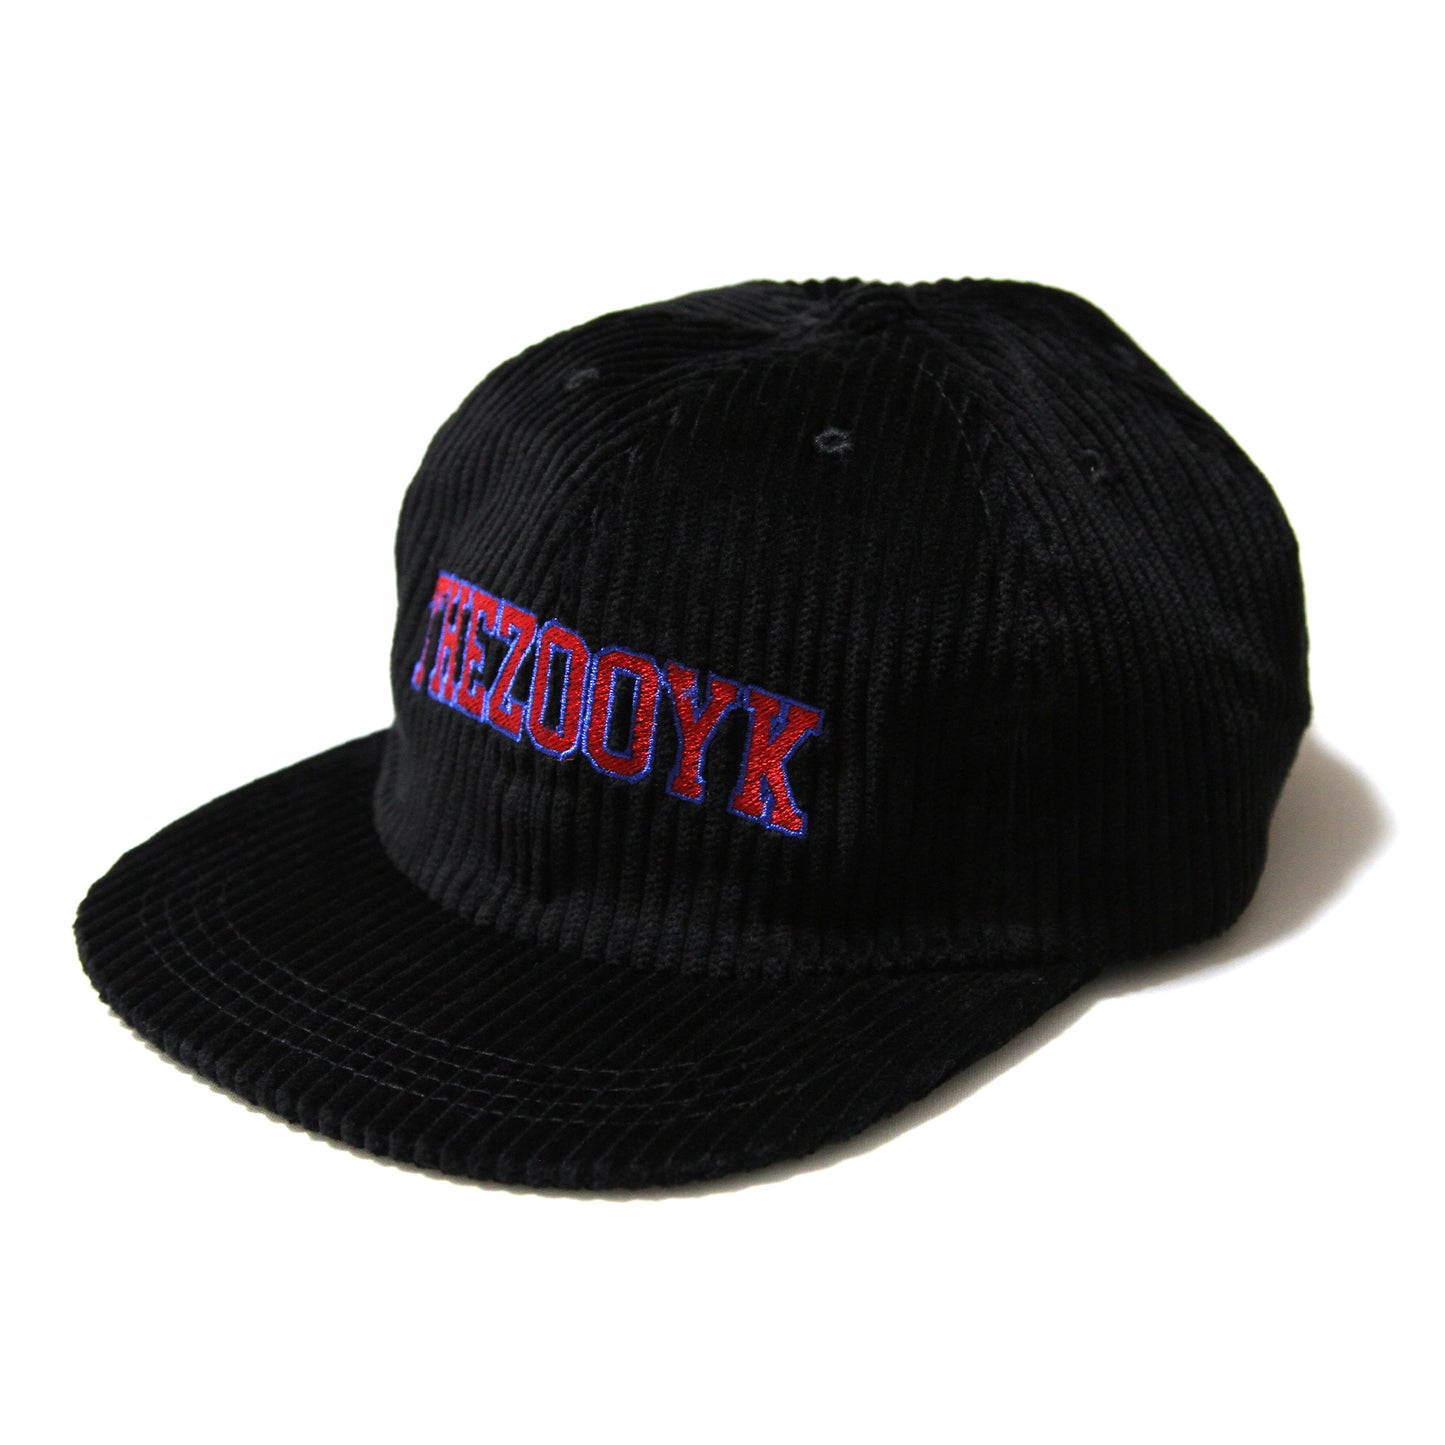 THEZOOYK - College Corduroy Cap/Black